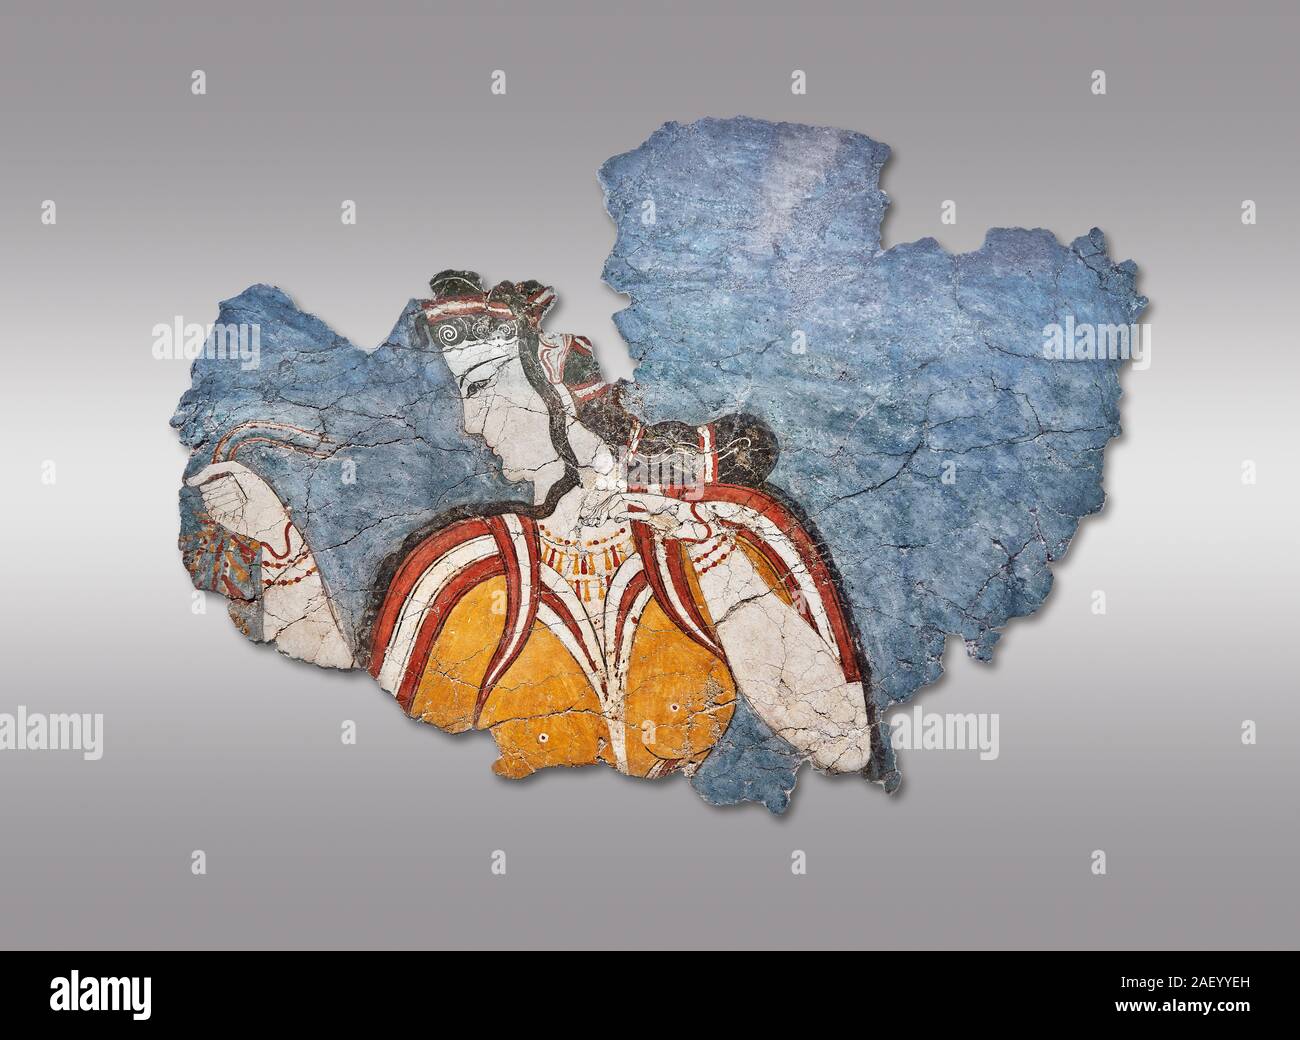 La "Señora" ycenaean fresco pintura mural representando a una mujer en una  procesión, Micenas, Grecia Cat nº 11670. Museo Arqueológico Nacional de  Atenas. Gre Fotografía de stock - Alamy